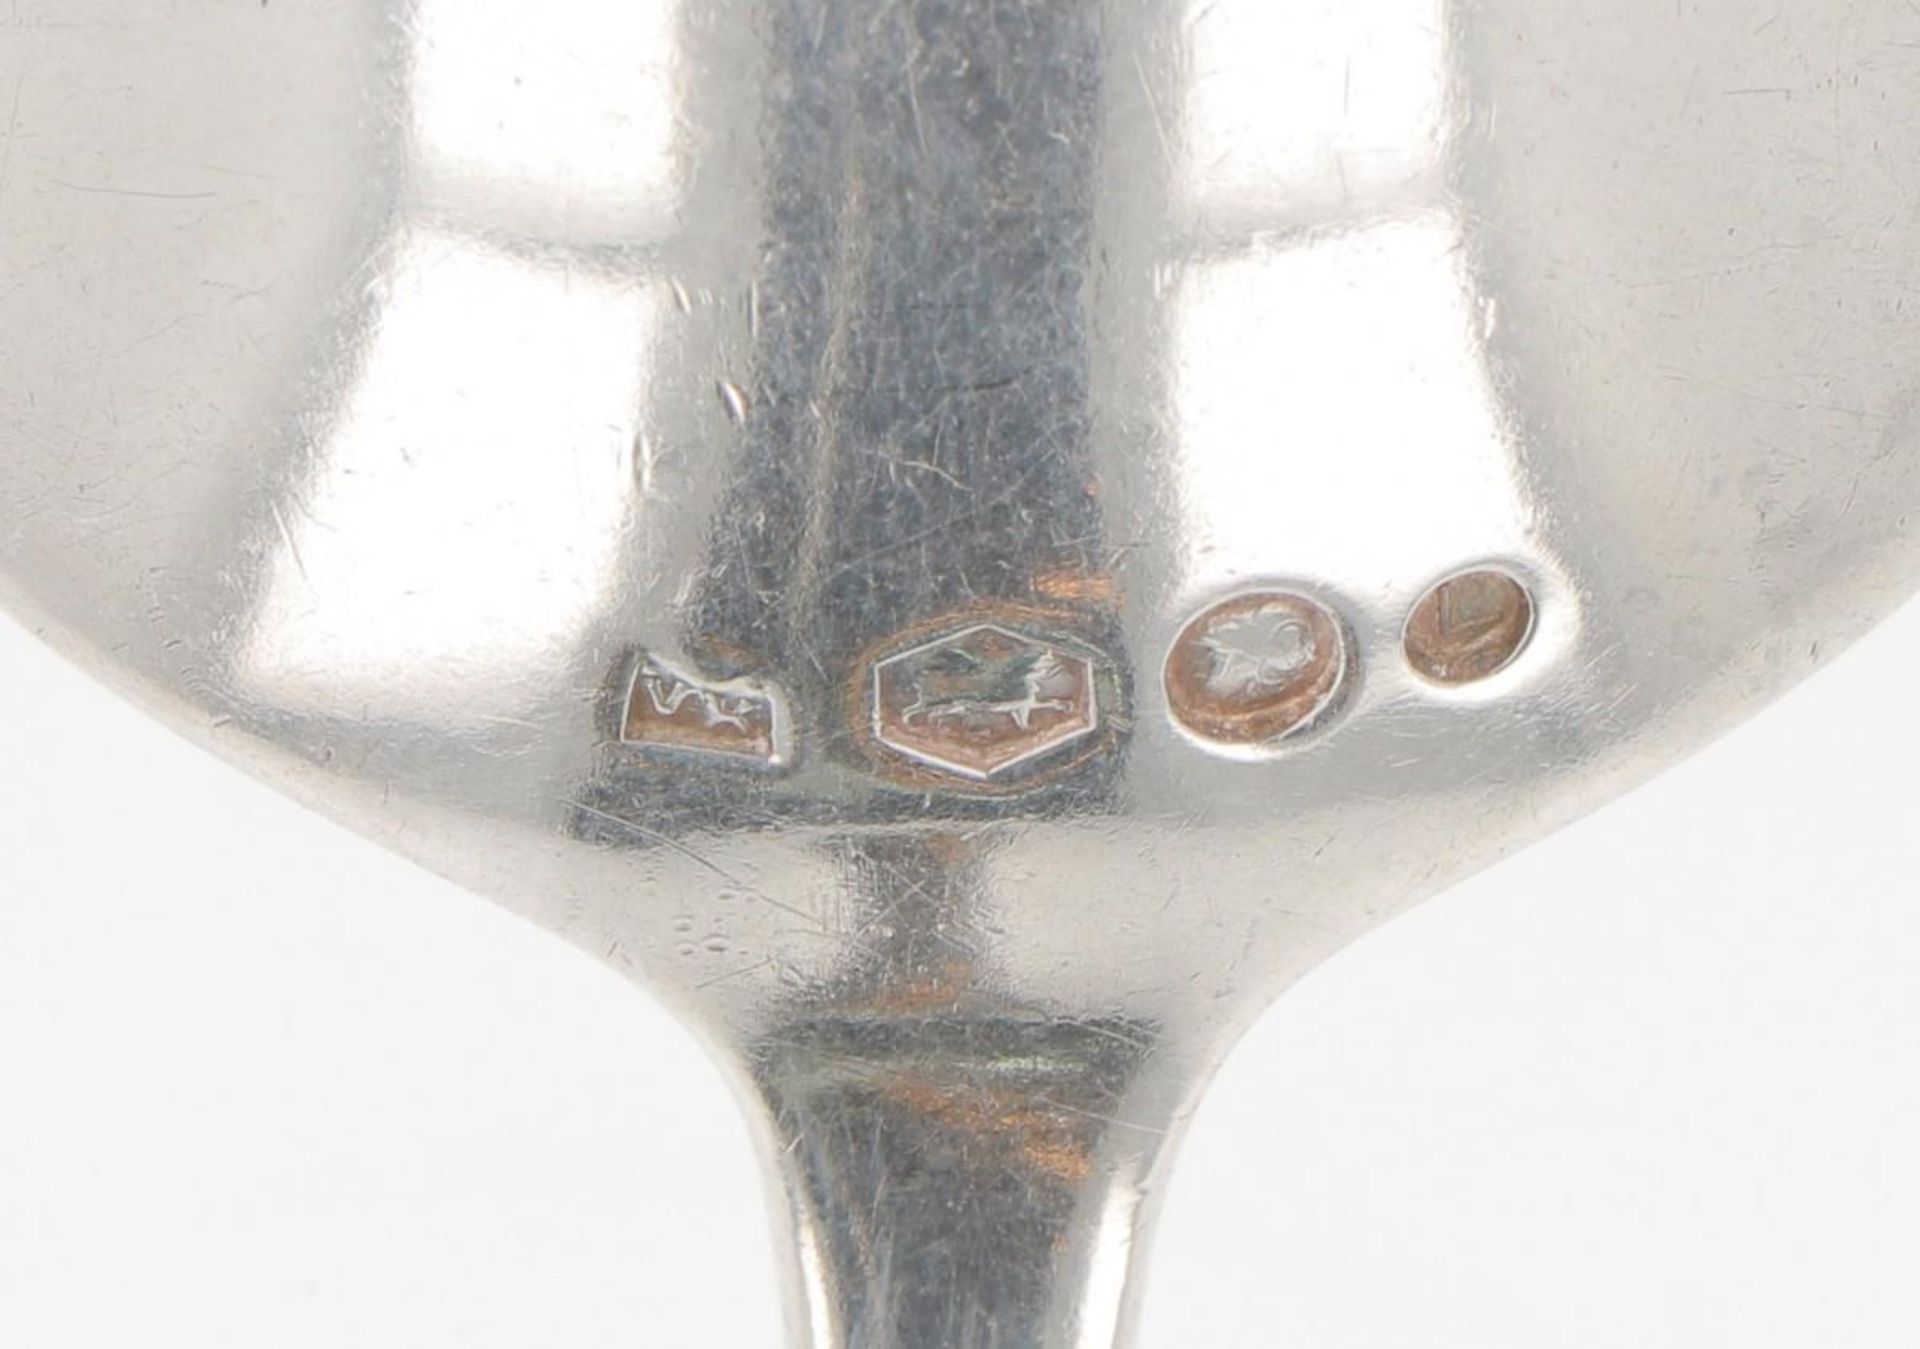 (3) piece set of ladles "Hollands puntfilet" silver. - Image 3 of 7